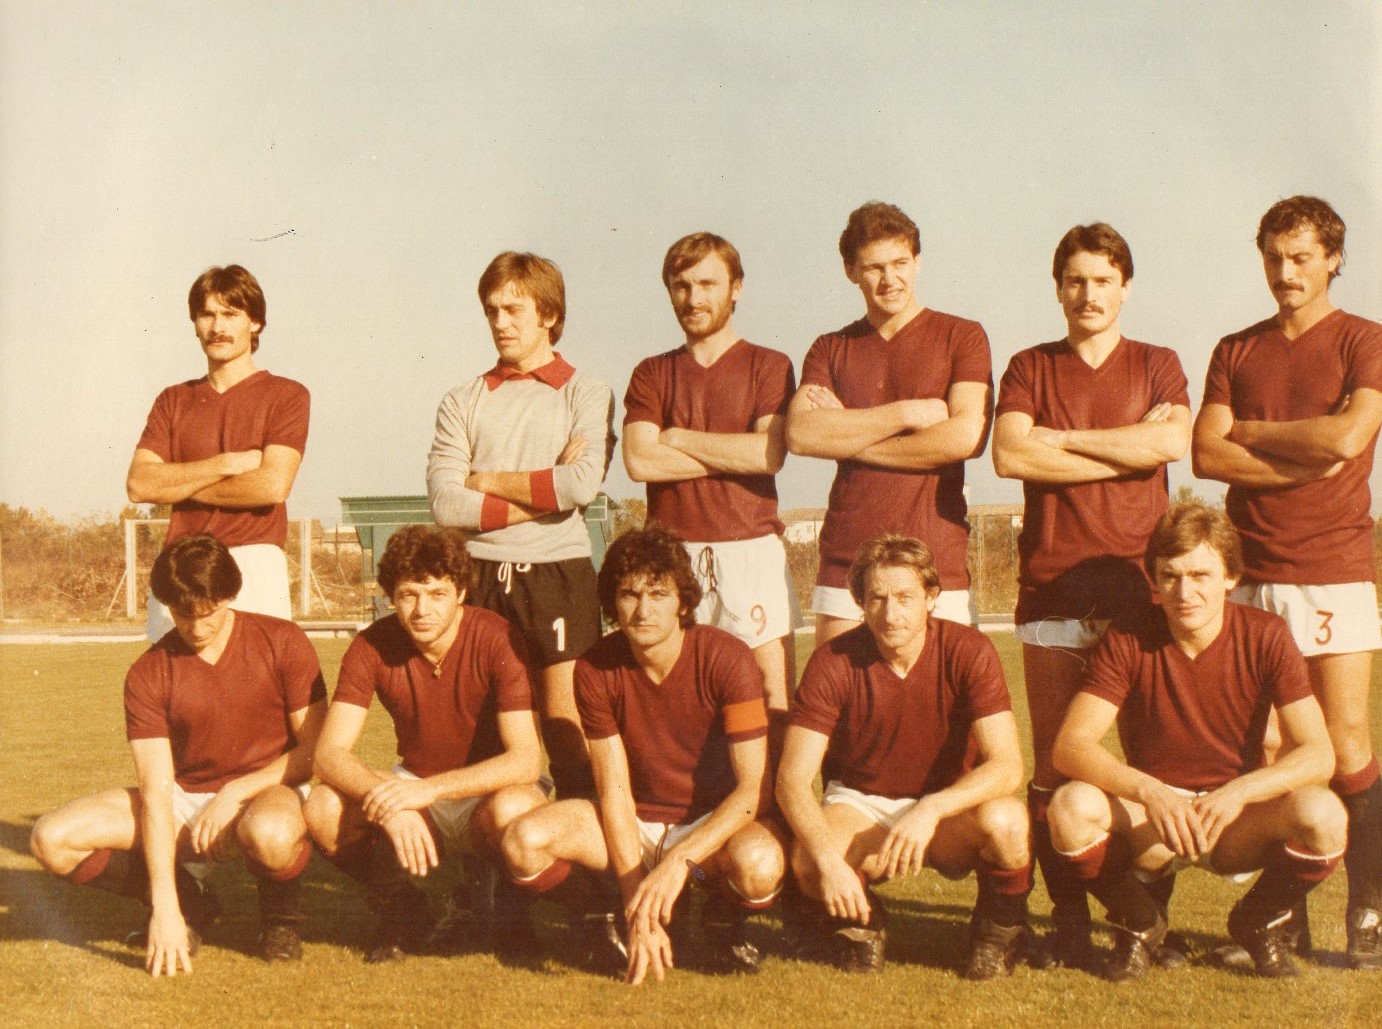 Palmanova calcio 1978-79 Quarta serie